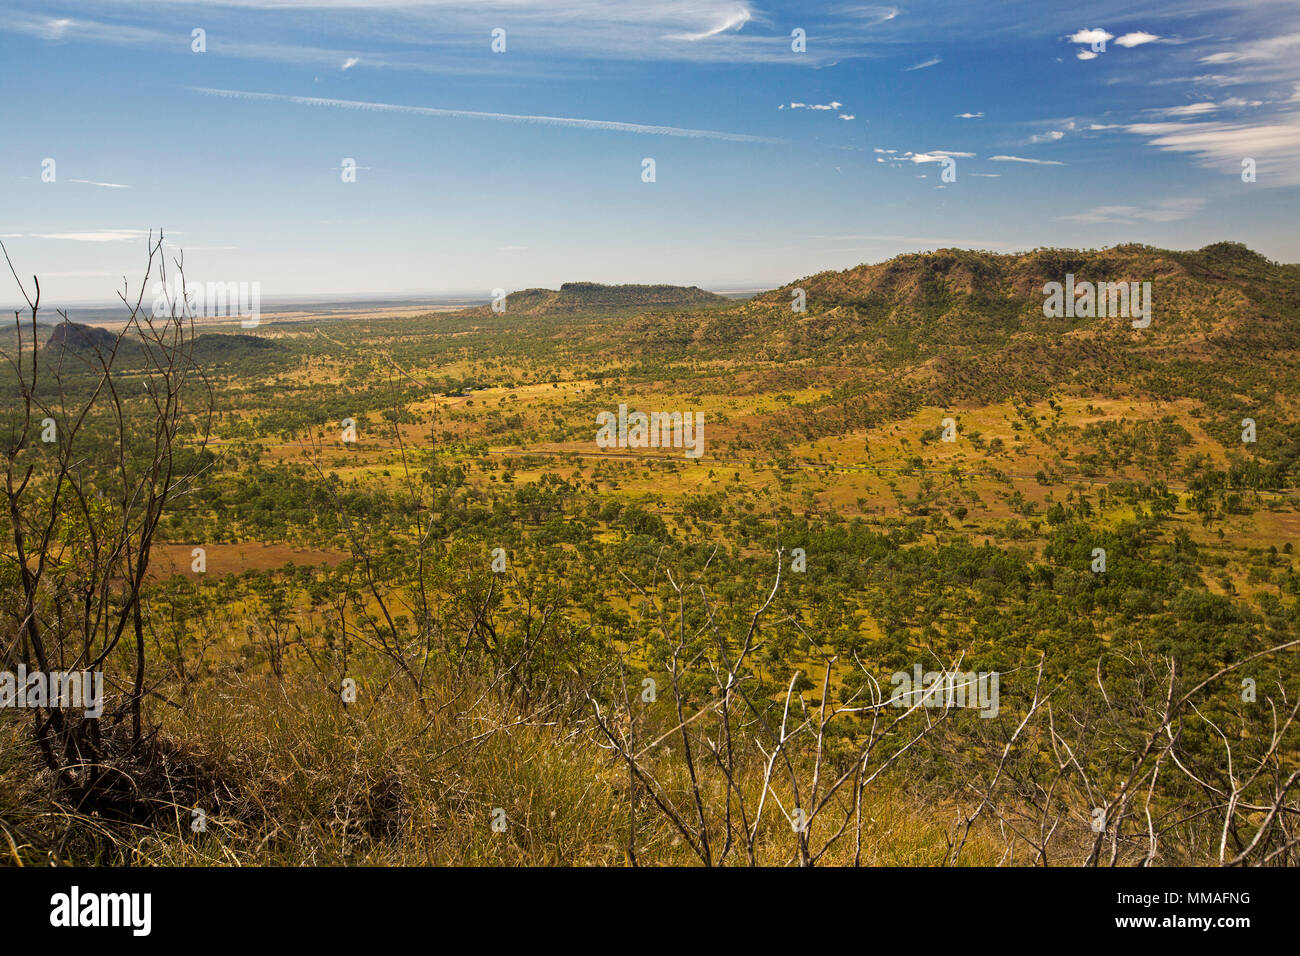 Voir de vastes étendues de paysages de l'outback et de plaines sous ciel bleu de Lookout à Minerva Hills National Park, près de Springsure Queensland Australie Banque D'Images